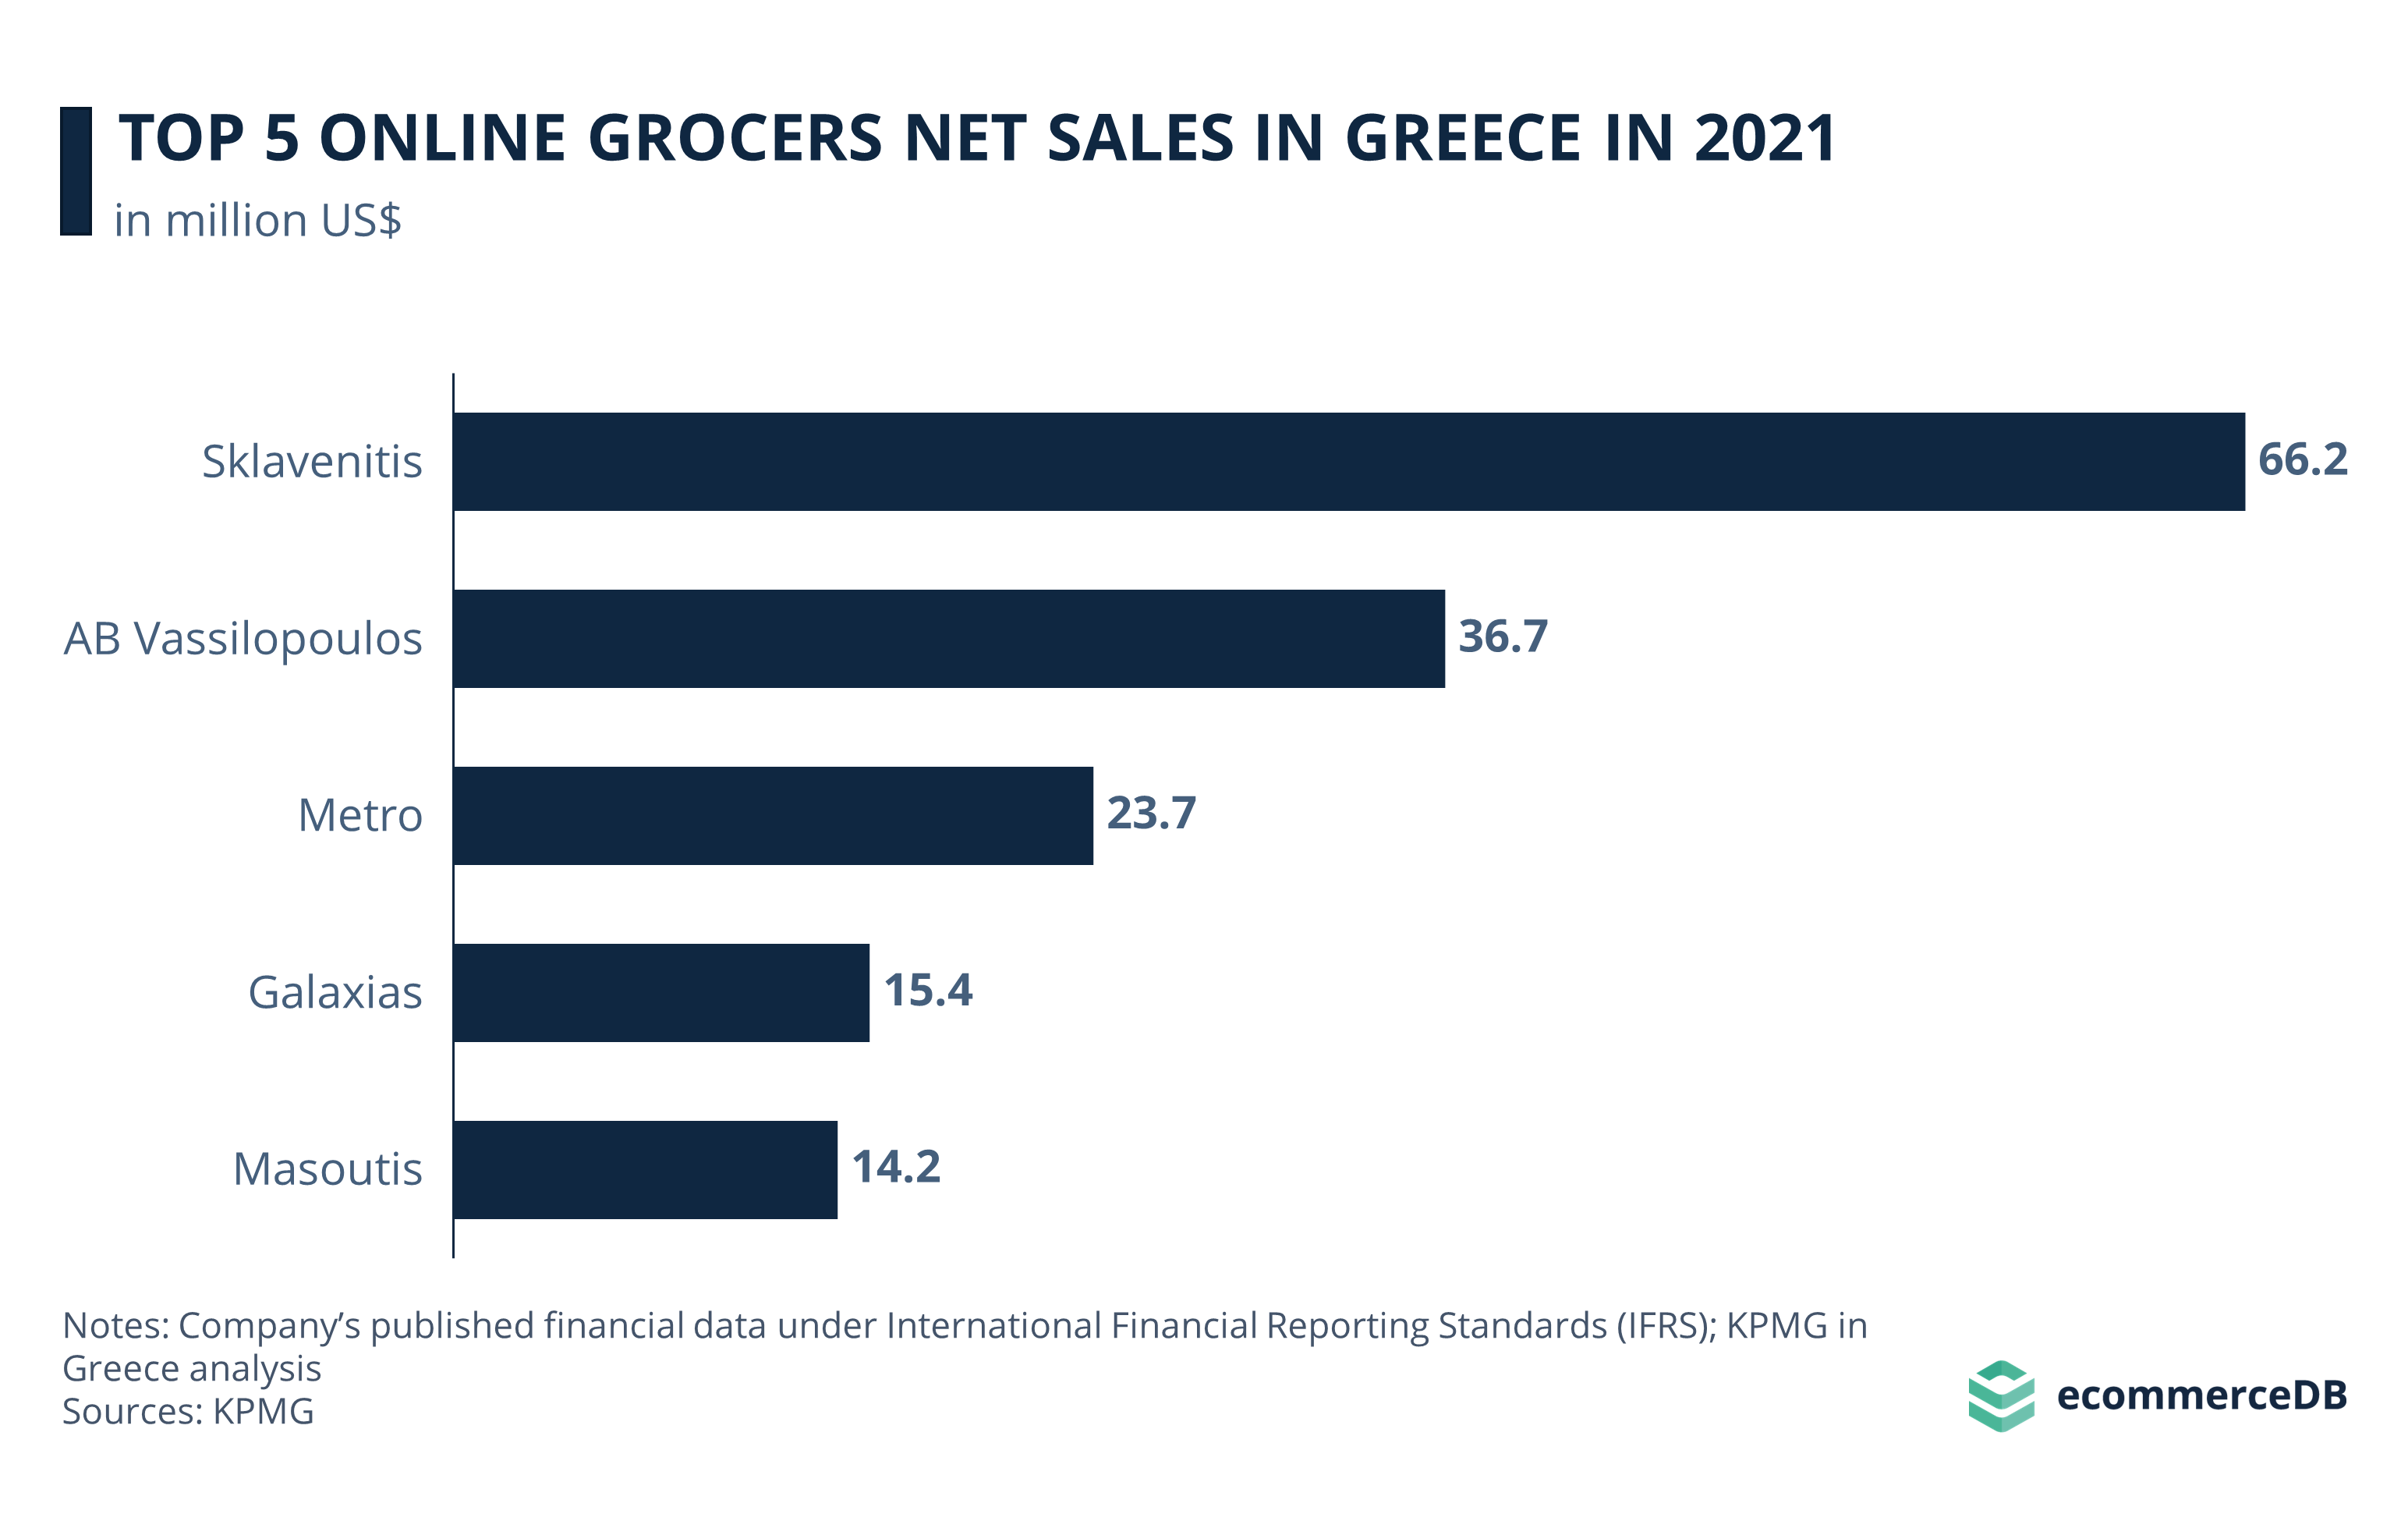 Top 5 Grocery Online Retailers Net Sales in Greece